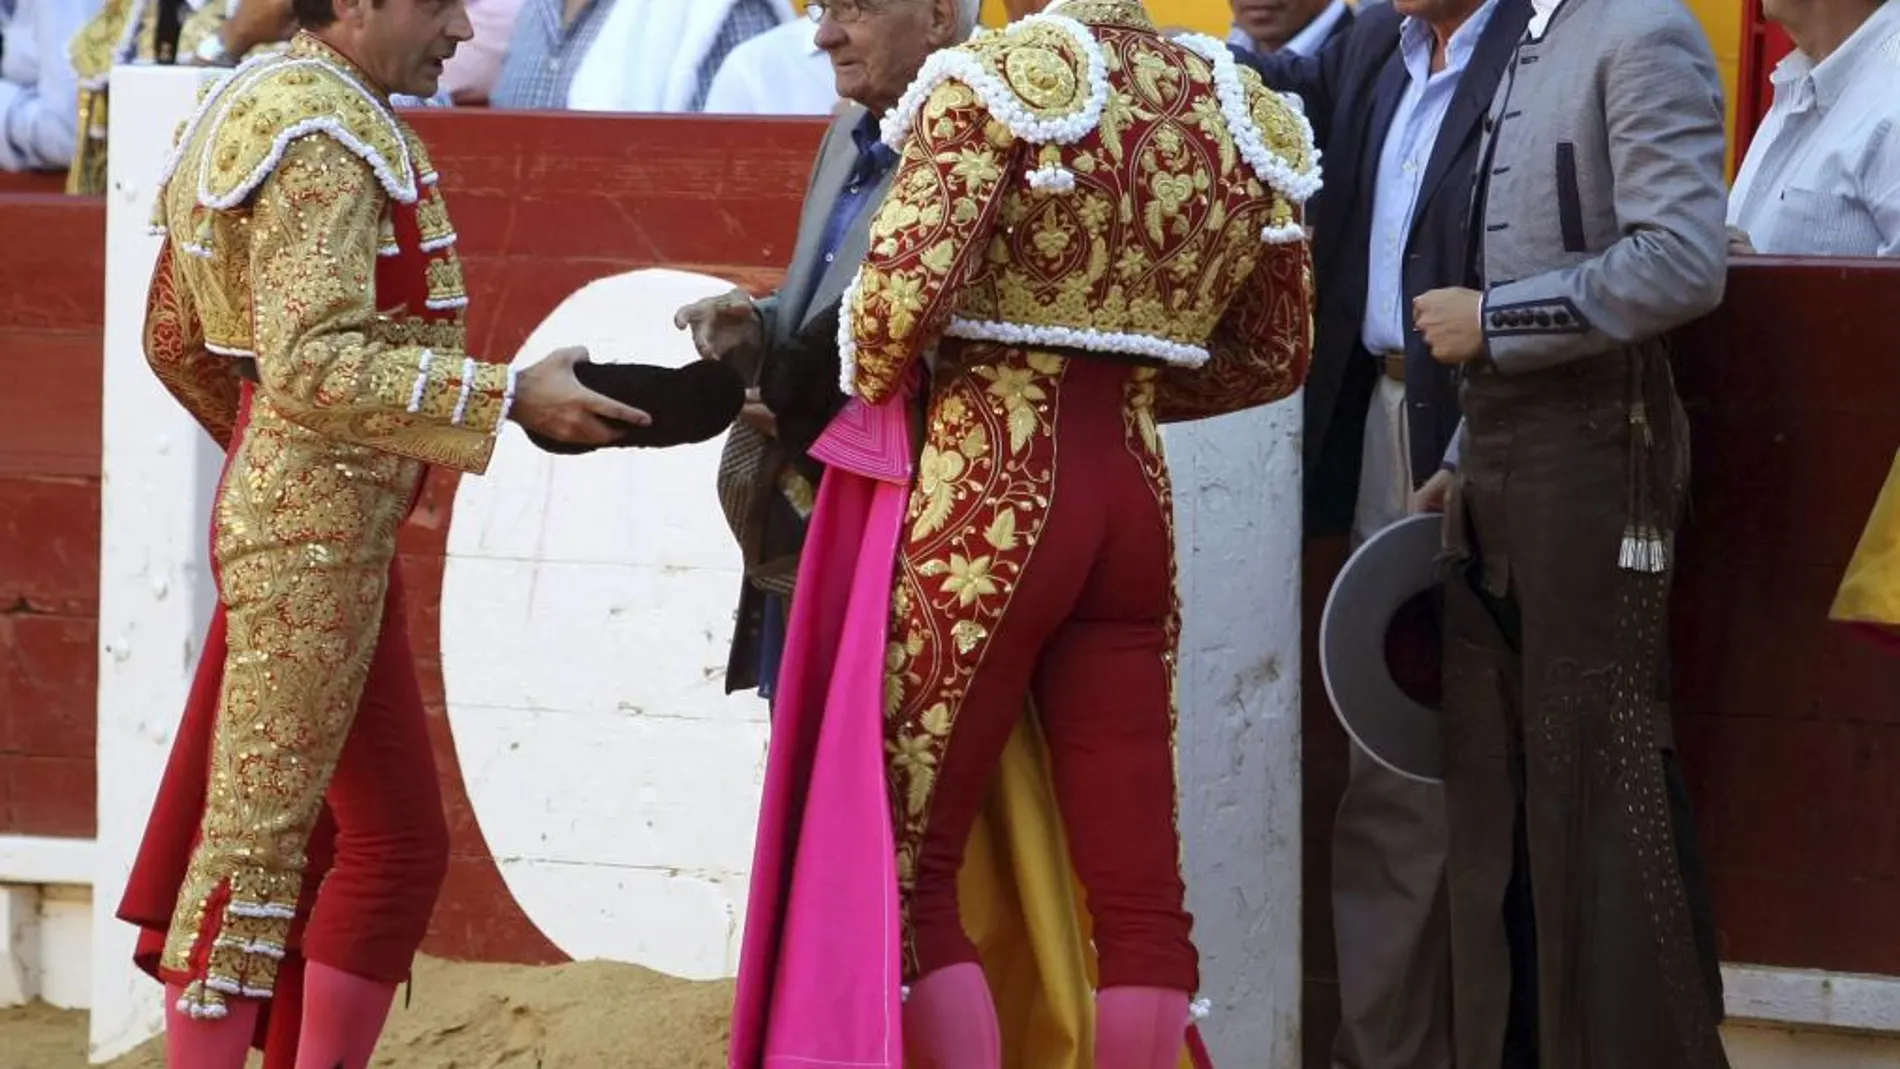 Ponce brinda un toro a Pepe Manzanares, en presencia del resto de la dinastía alicantina con José María hijo, de espaldas, y José María padre y Manuel, a la derecha